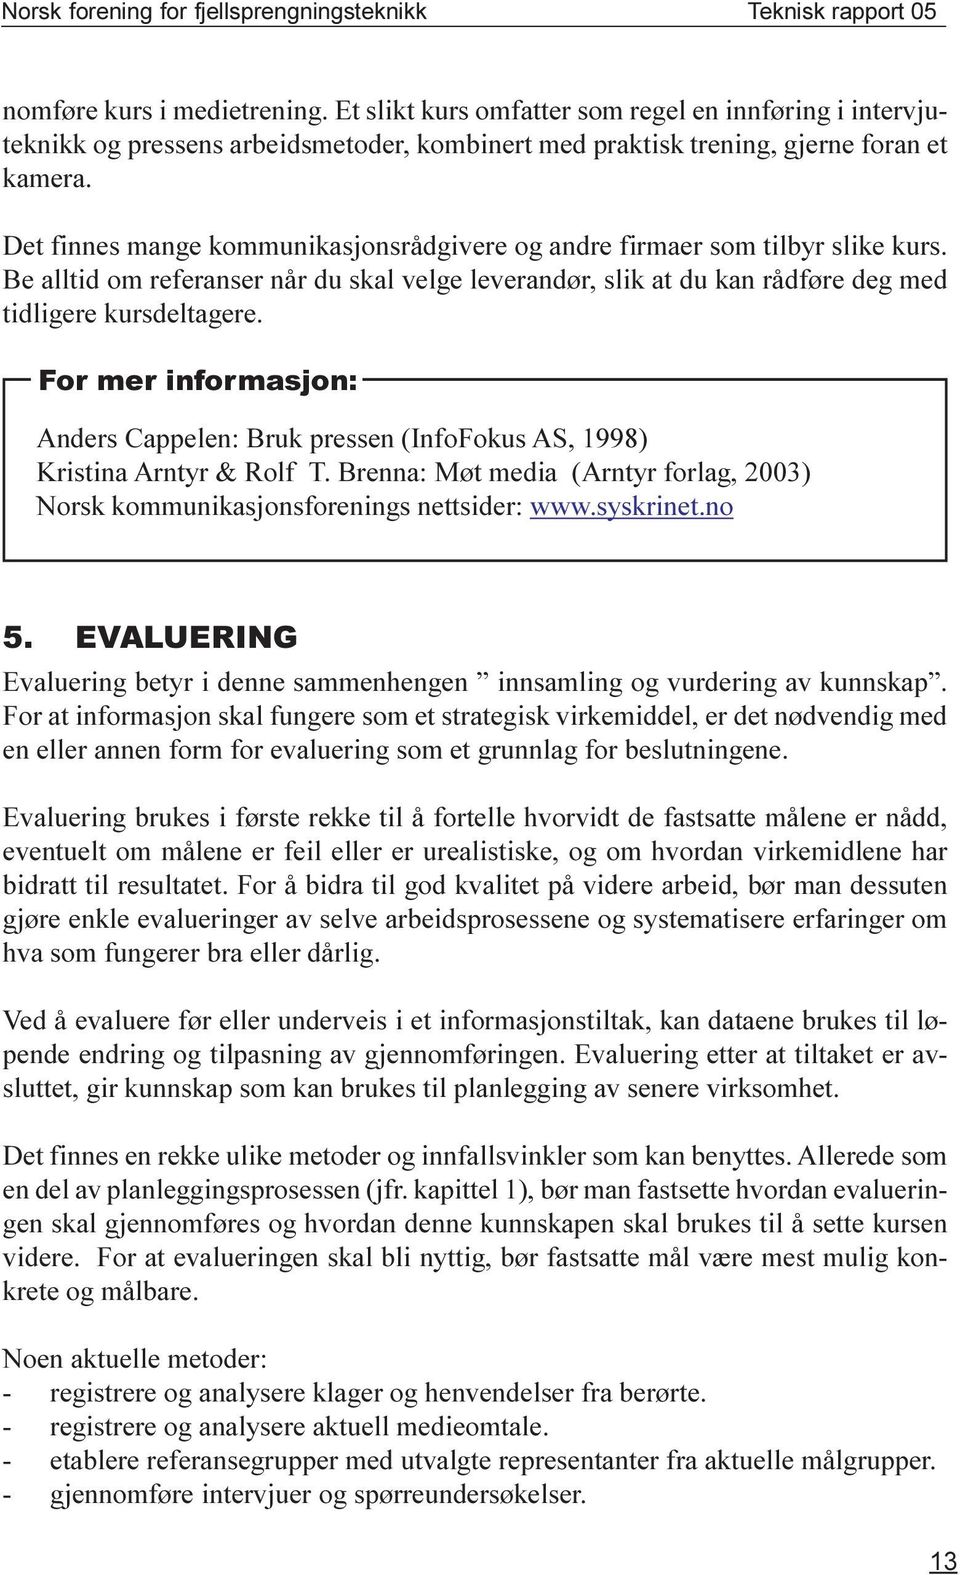 For mer informasjon: Anders Cappelen: Bruk pressen (InfoFokus AS, 1998) Kristina Arntyr & Rolf T. Brenna: Møt media (Arntyr forlag, 2003) Norsk kommunikasjonsforenings nettsider: www.syskrinet.no 5.